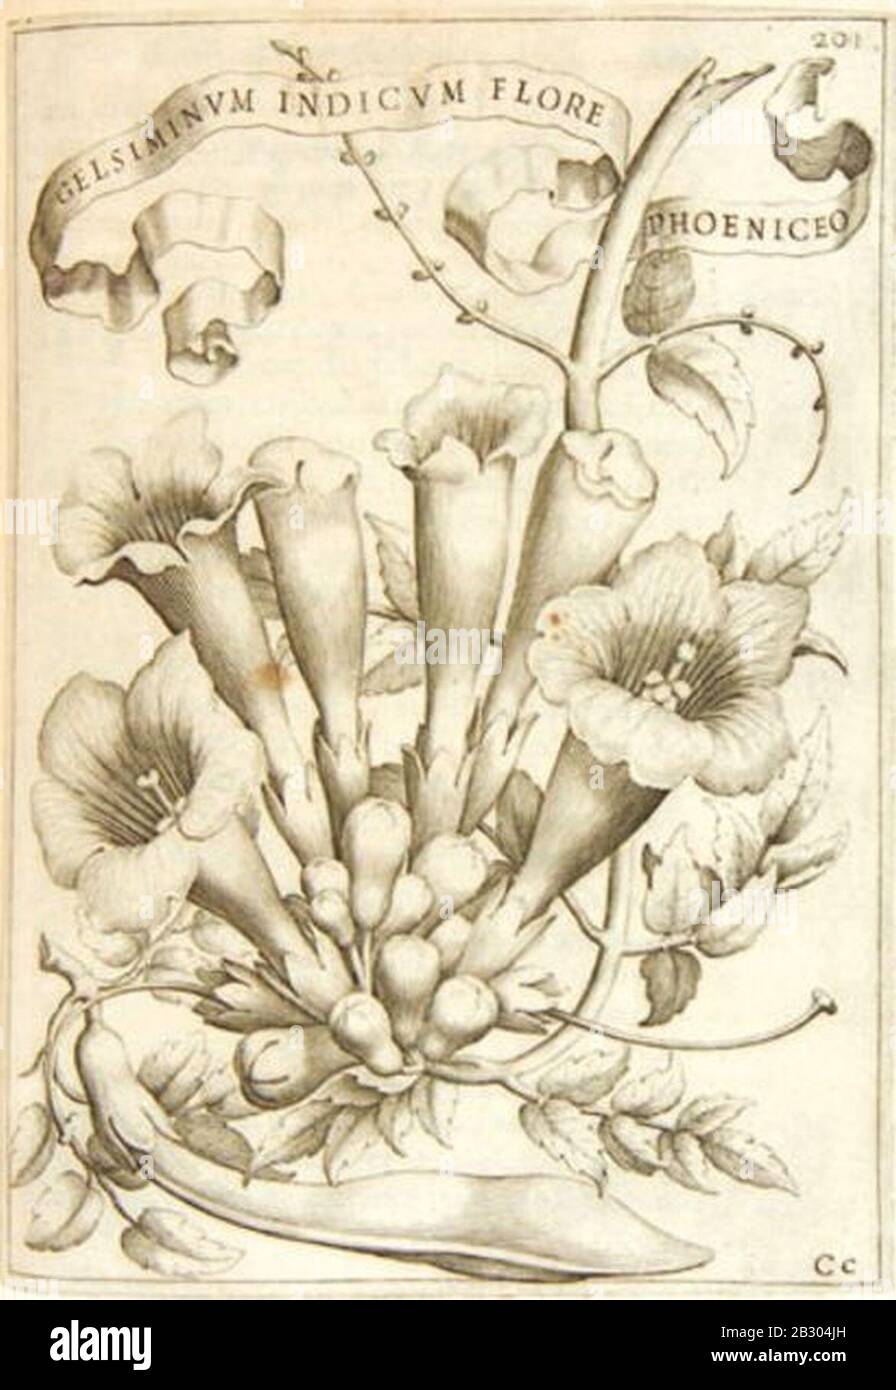 Gelsiminum Indicum - Giovanni Battista Ferrari. Foto Stock